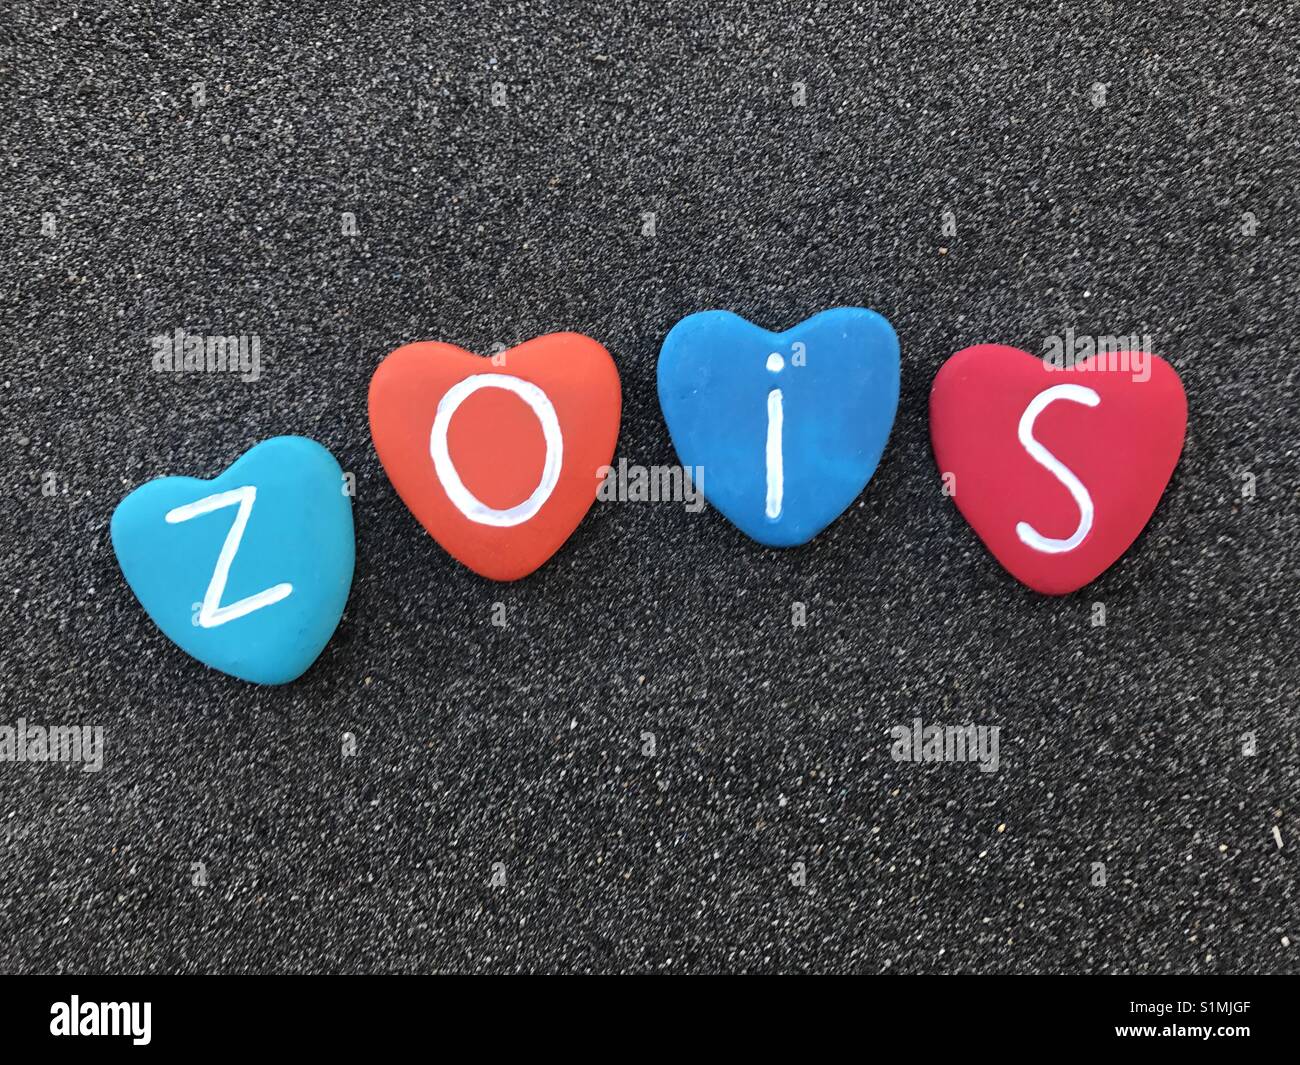 Zois, griechischer Herkunft männliche Namen mit bunten Herzen Steine über schwarzen vulkanischen Sand Stockfoto